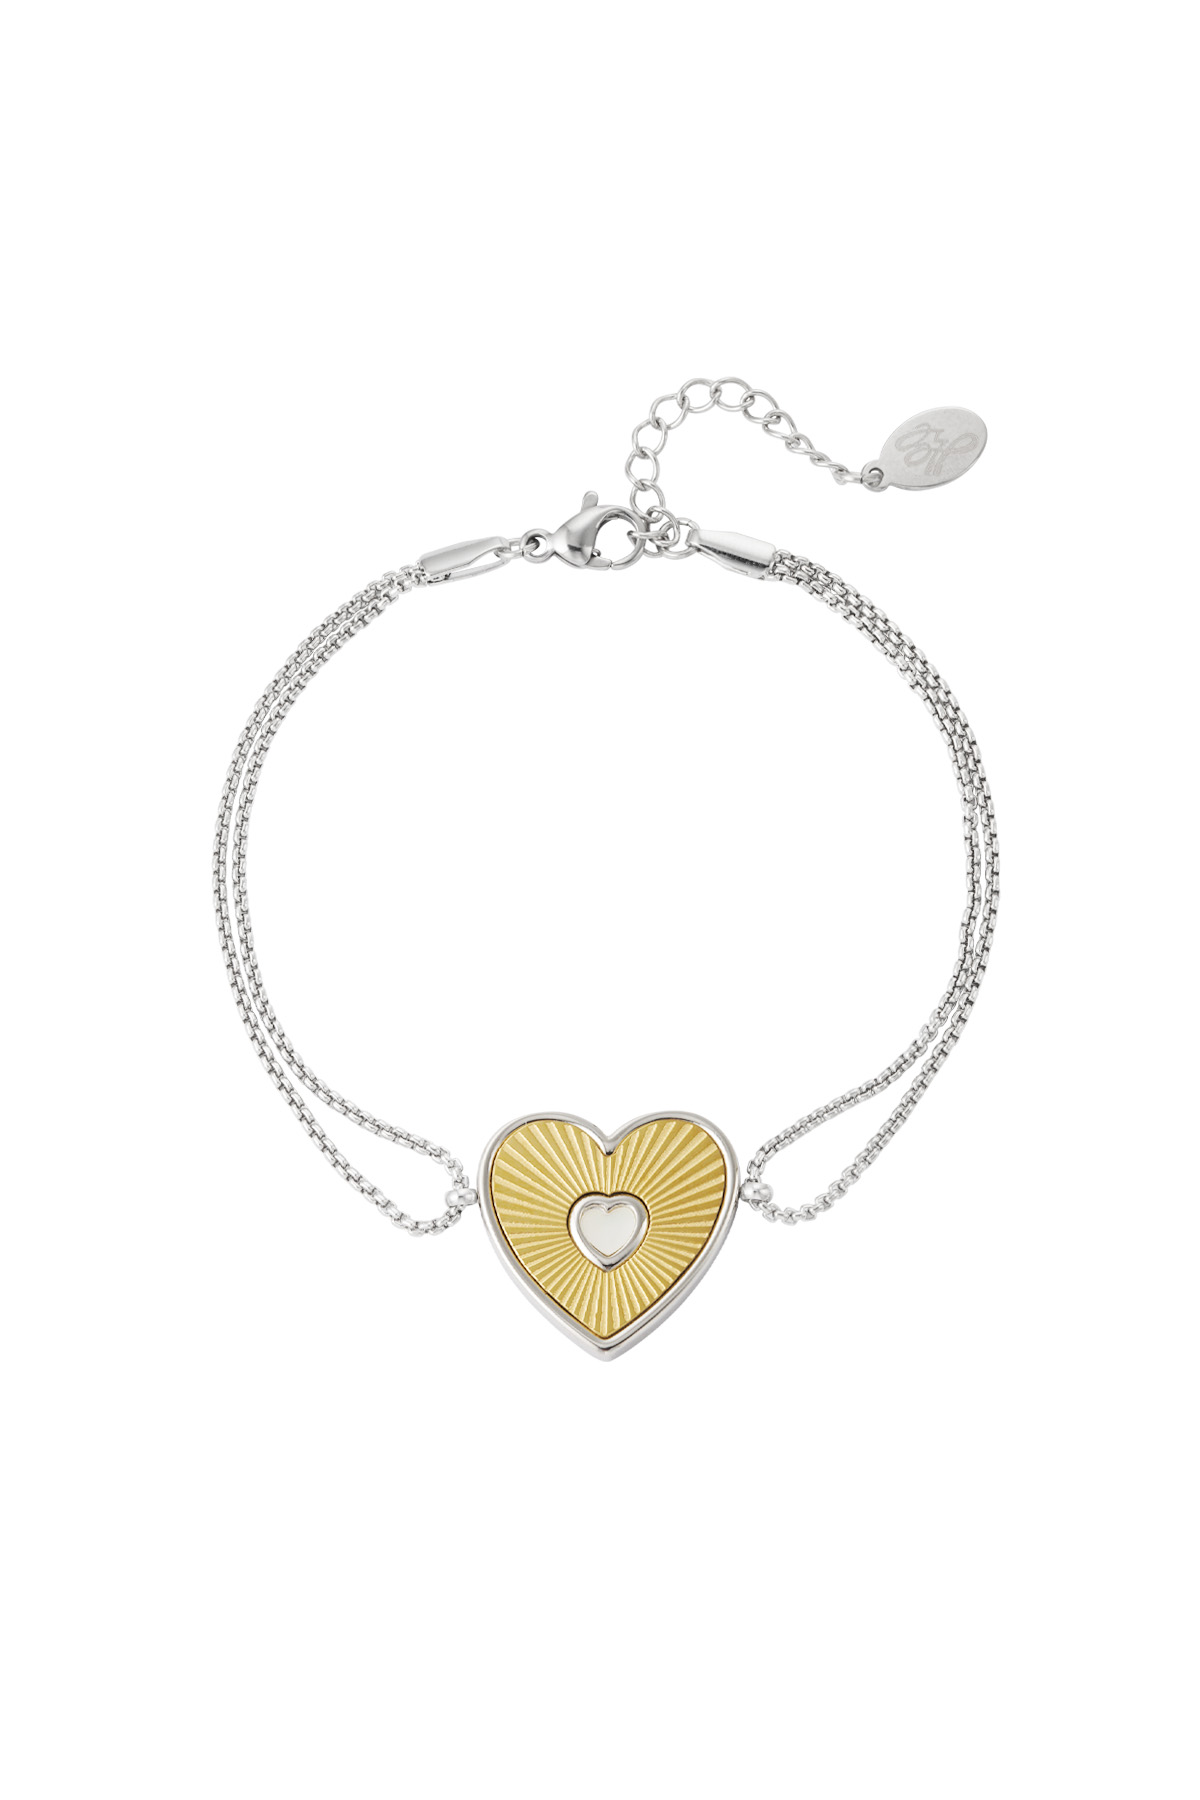 Bracelet lover heart - gold